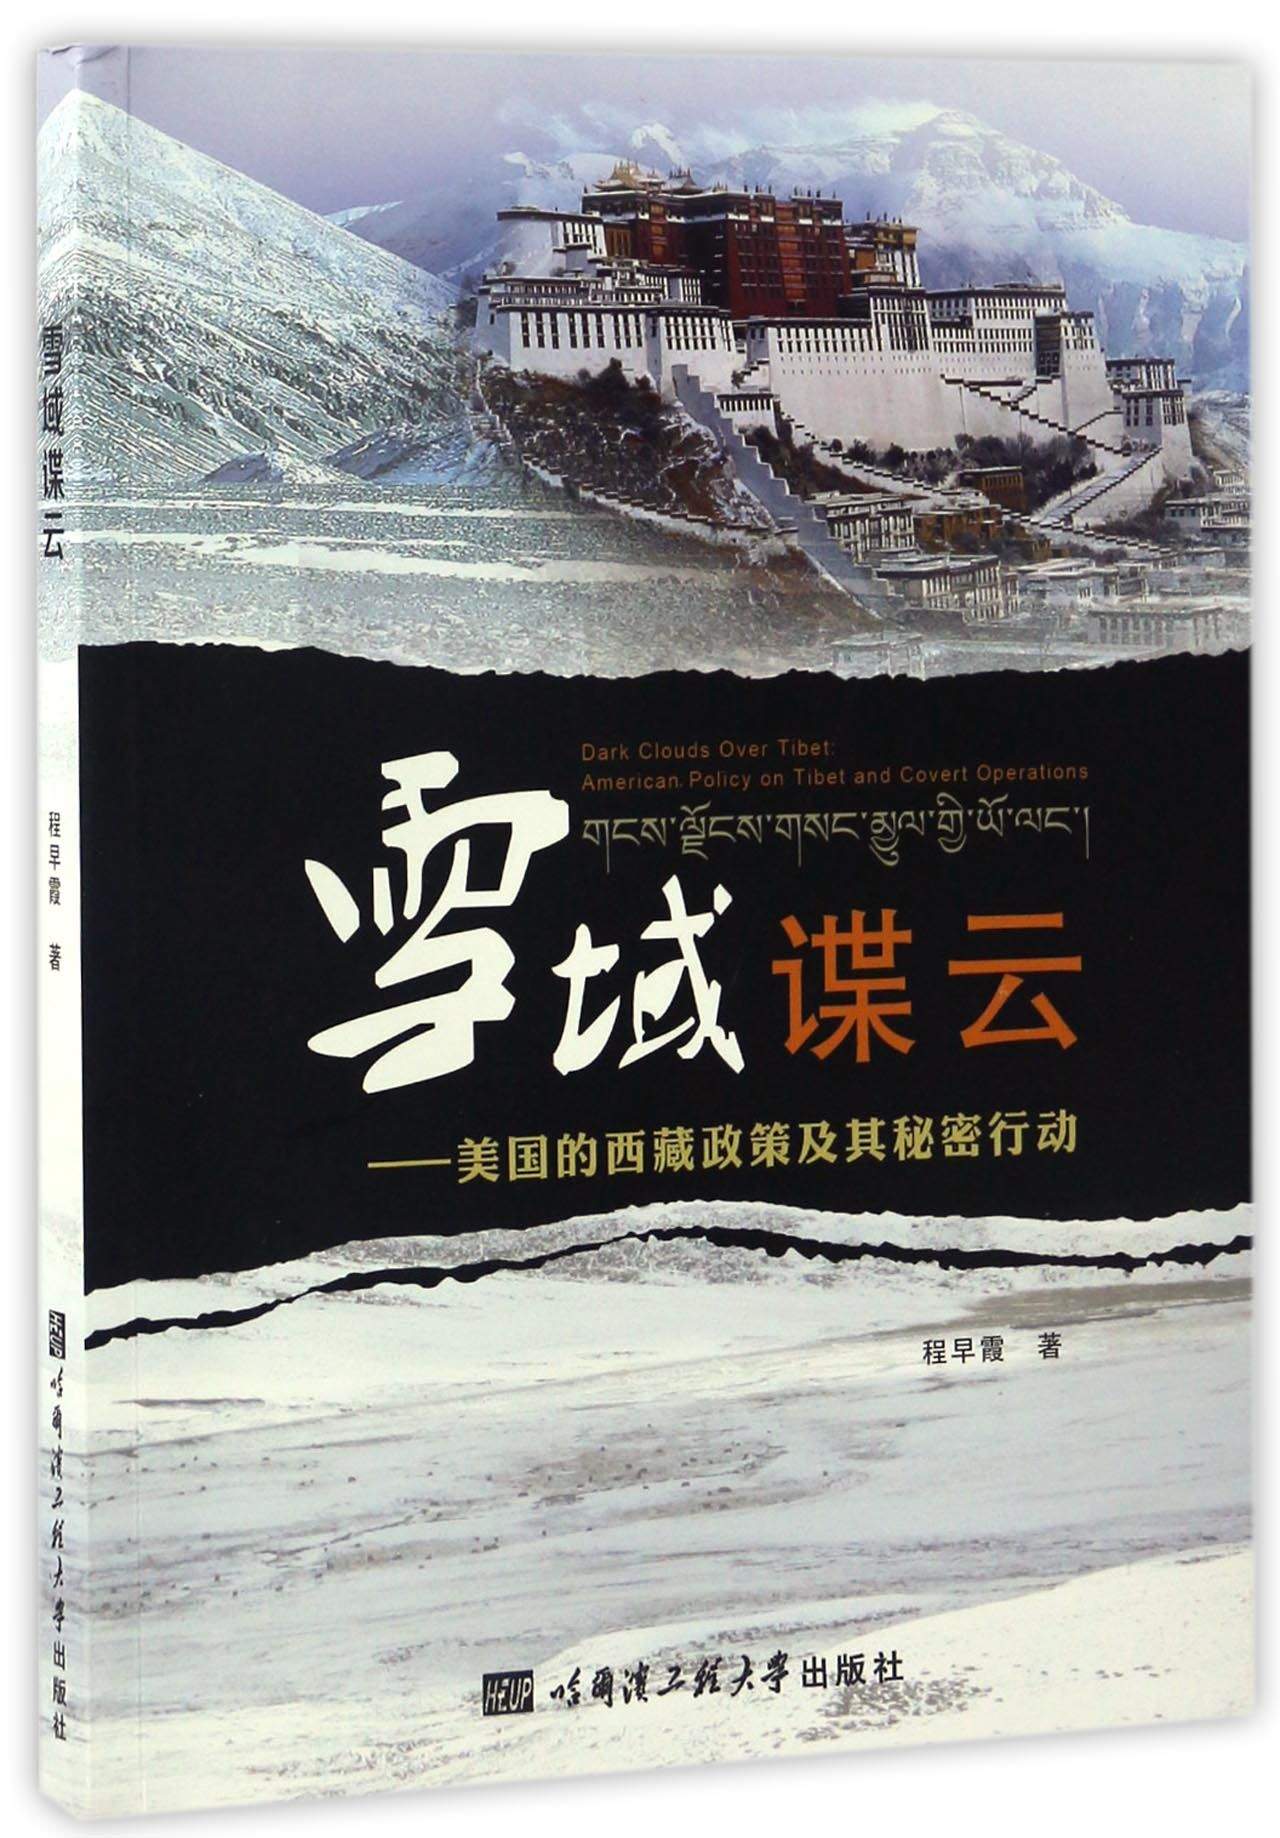 雪域谍云 美国的西藏政策及其秘密行动 kindle格式下载